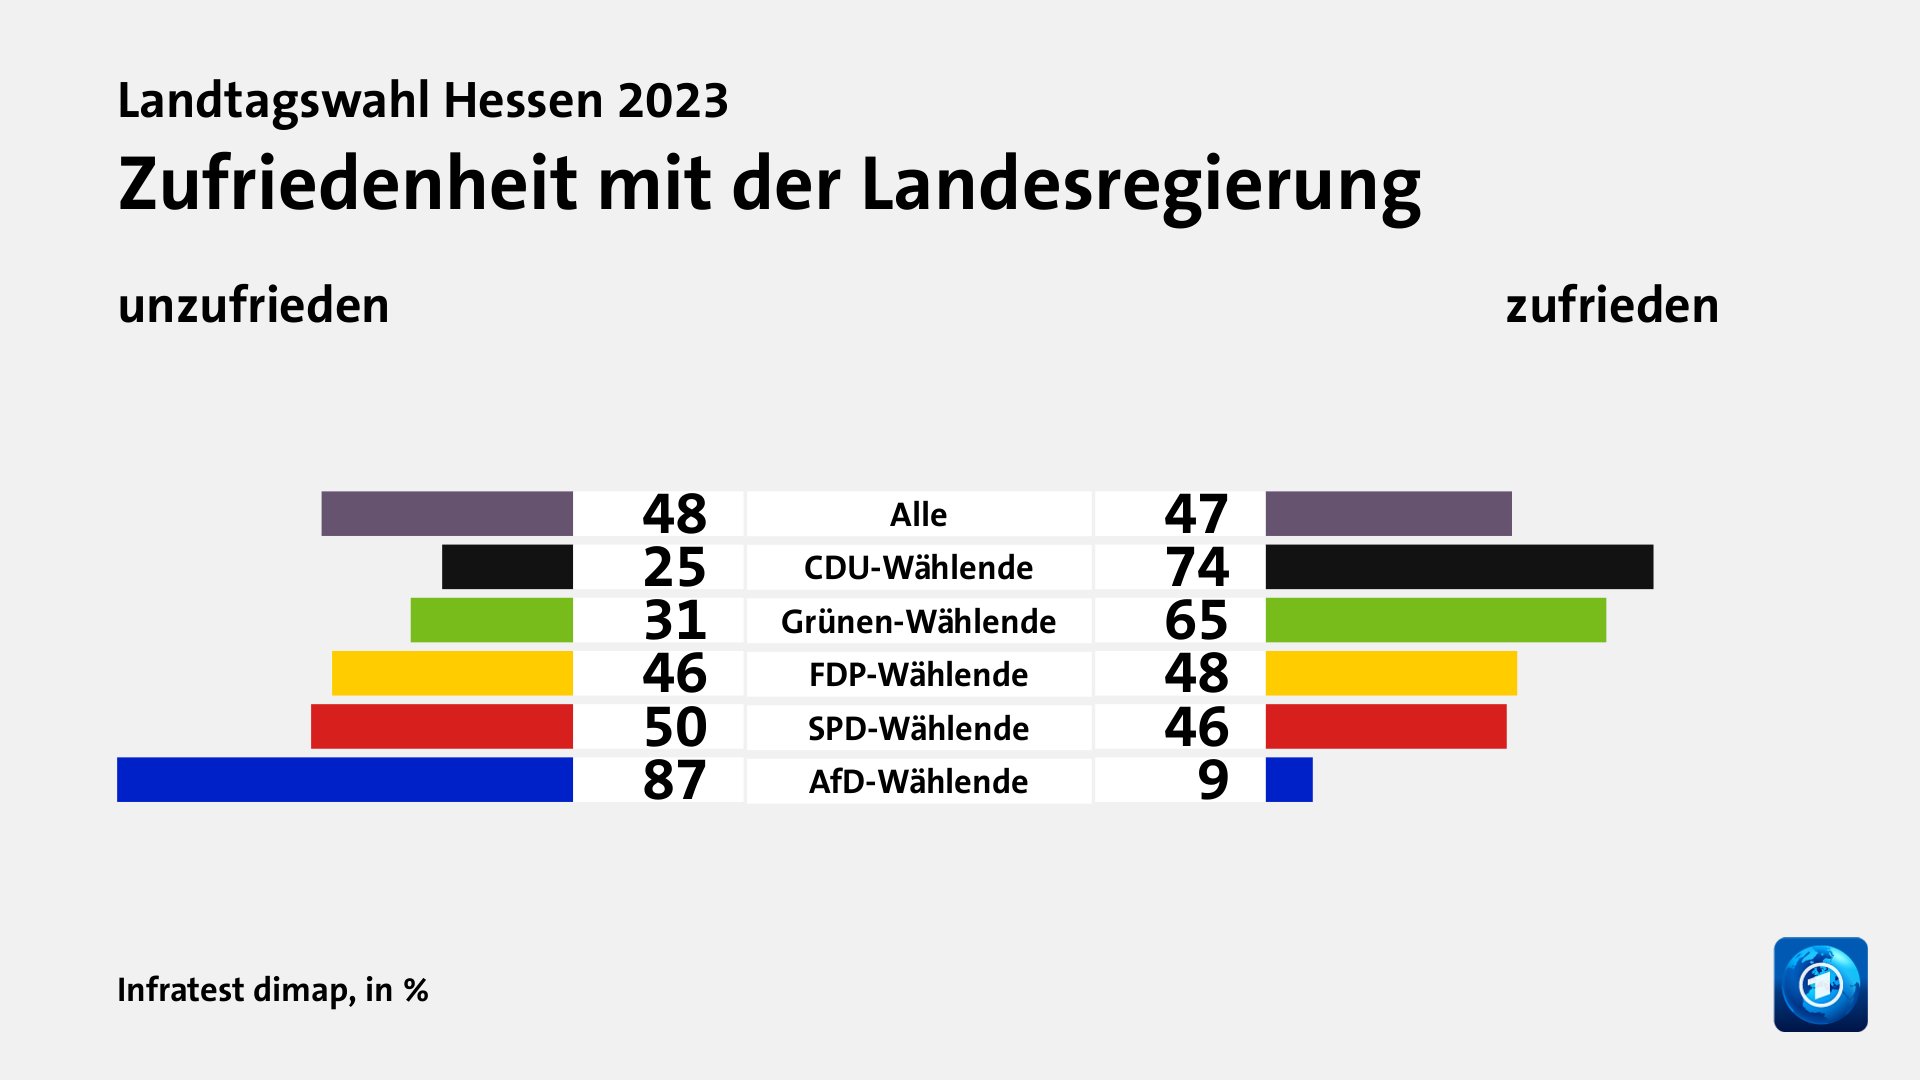 Zufriedenheit mit der Landesregierung (in %) Alle: unzufrieden 48, zufrieden 47; CDU-Wählende: unzufrieden 25, zufrieden 74; Grünen-Wählende: unzufrieden 31, zufrieden 65; FDP-Wählende: unzufrieden 46, zufrieden 48; SPD-Wählende: unzufrieden 50, zufrieden 46; AfD-Wählende: unzufrieden 87, zufrieden 9; Quelle: Infratest dimap